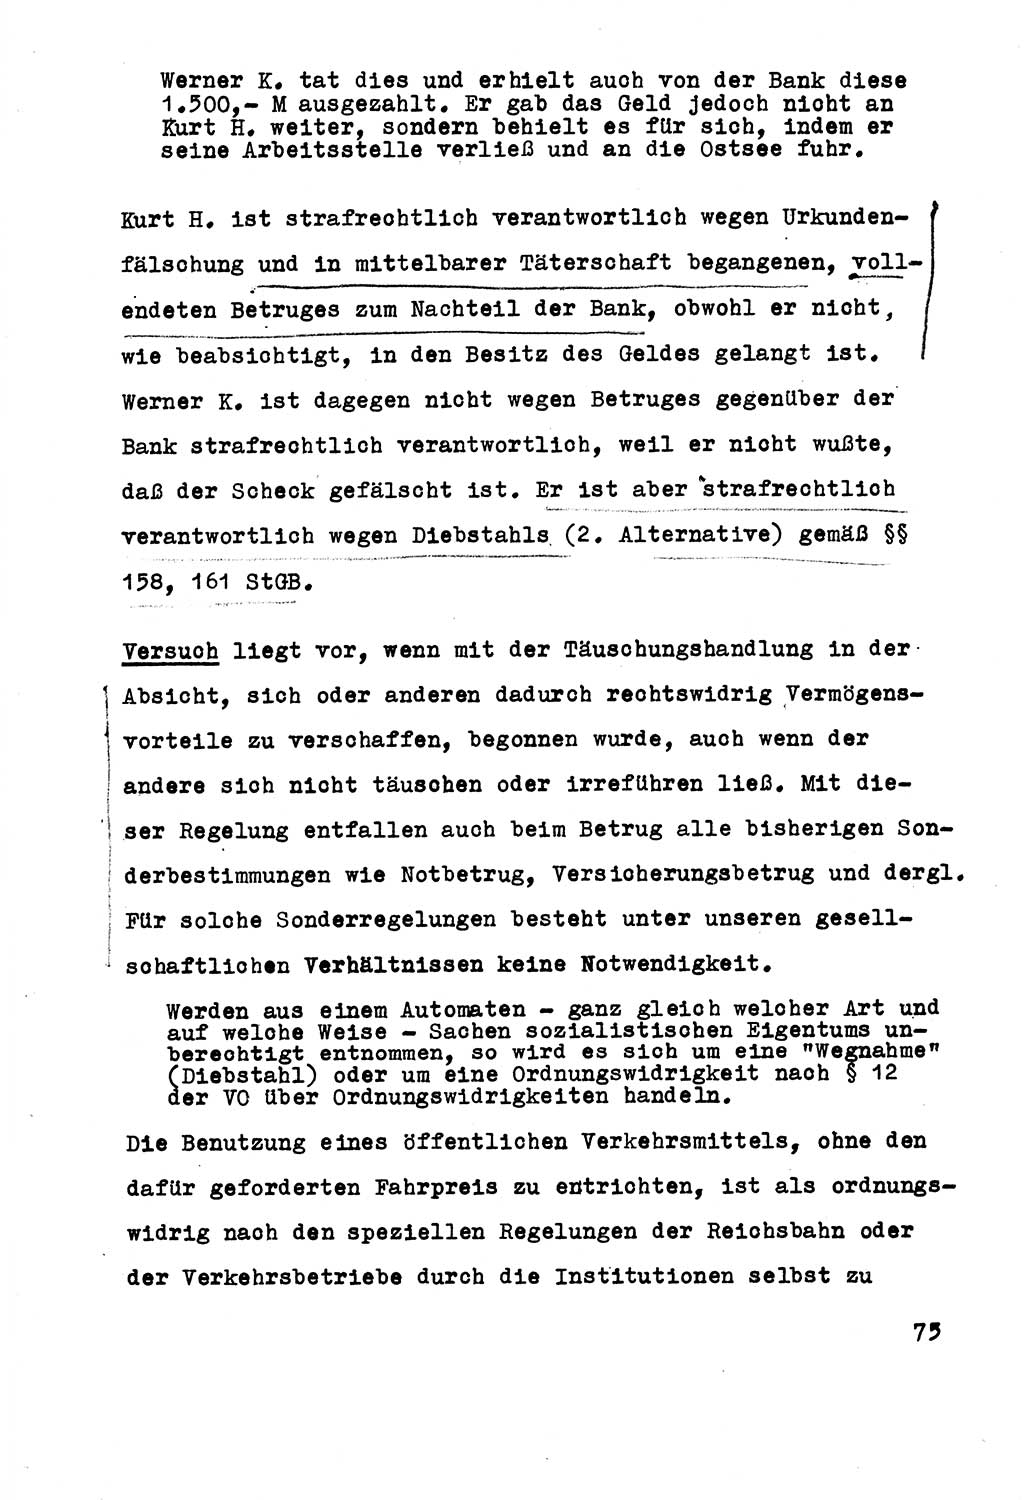 Strafrecht der DDR (Deutsche Demokratische Republik), Besonderer Teil, Lehrmaterial, Heft 5 1970, Seite 75 (Strafr. DDR BT Lehrmat. H. 5 1970, S. 75)